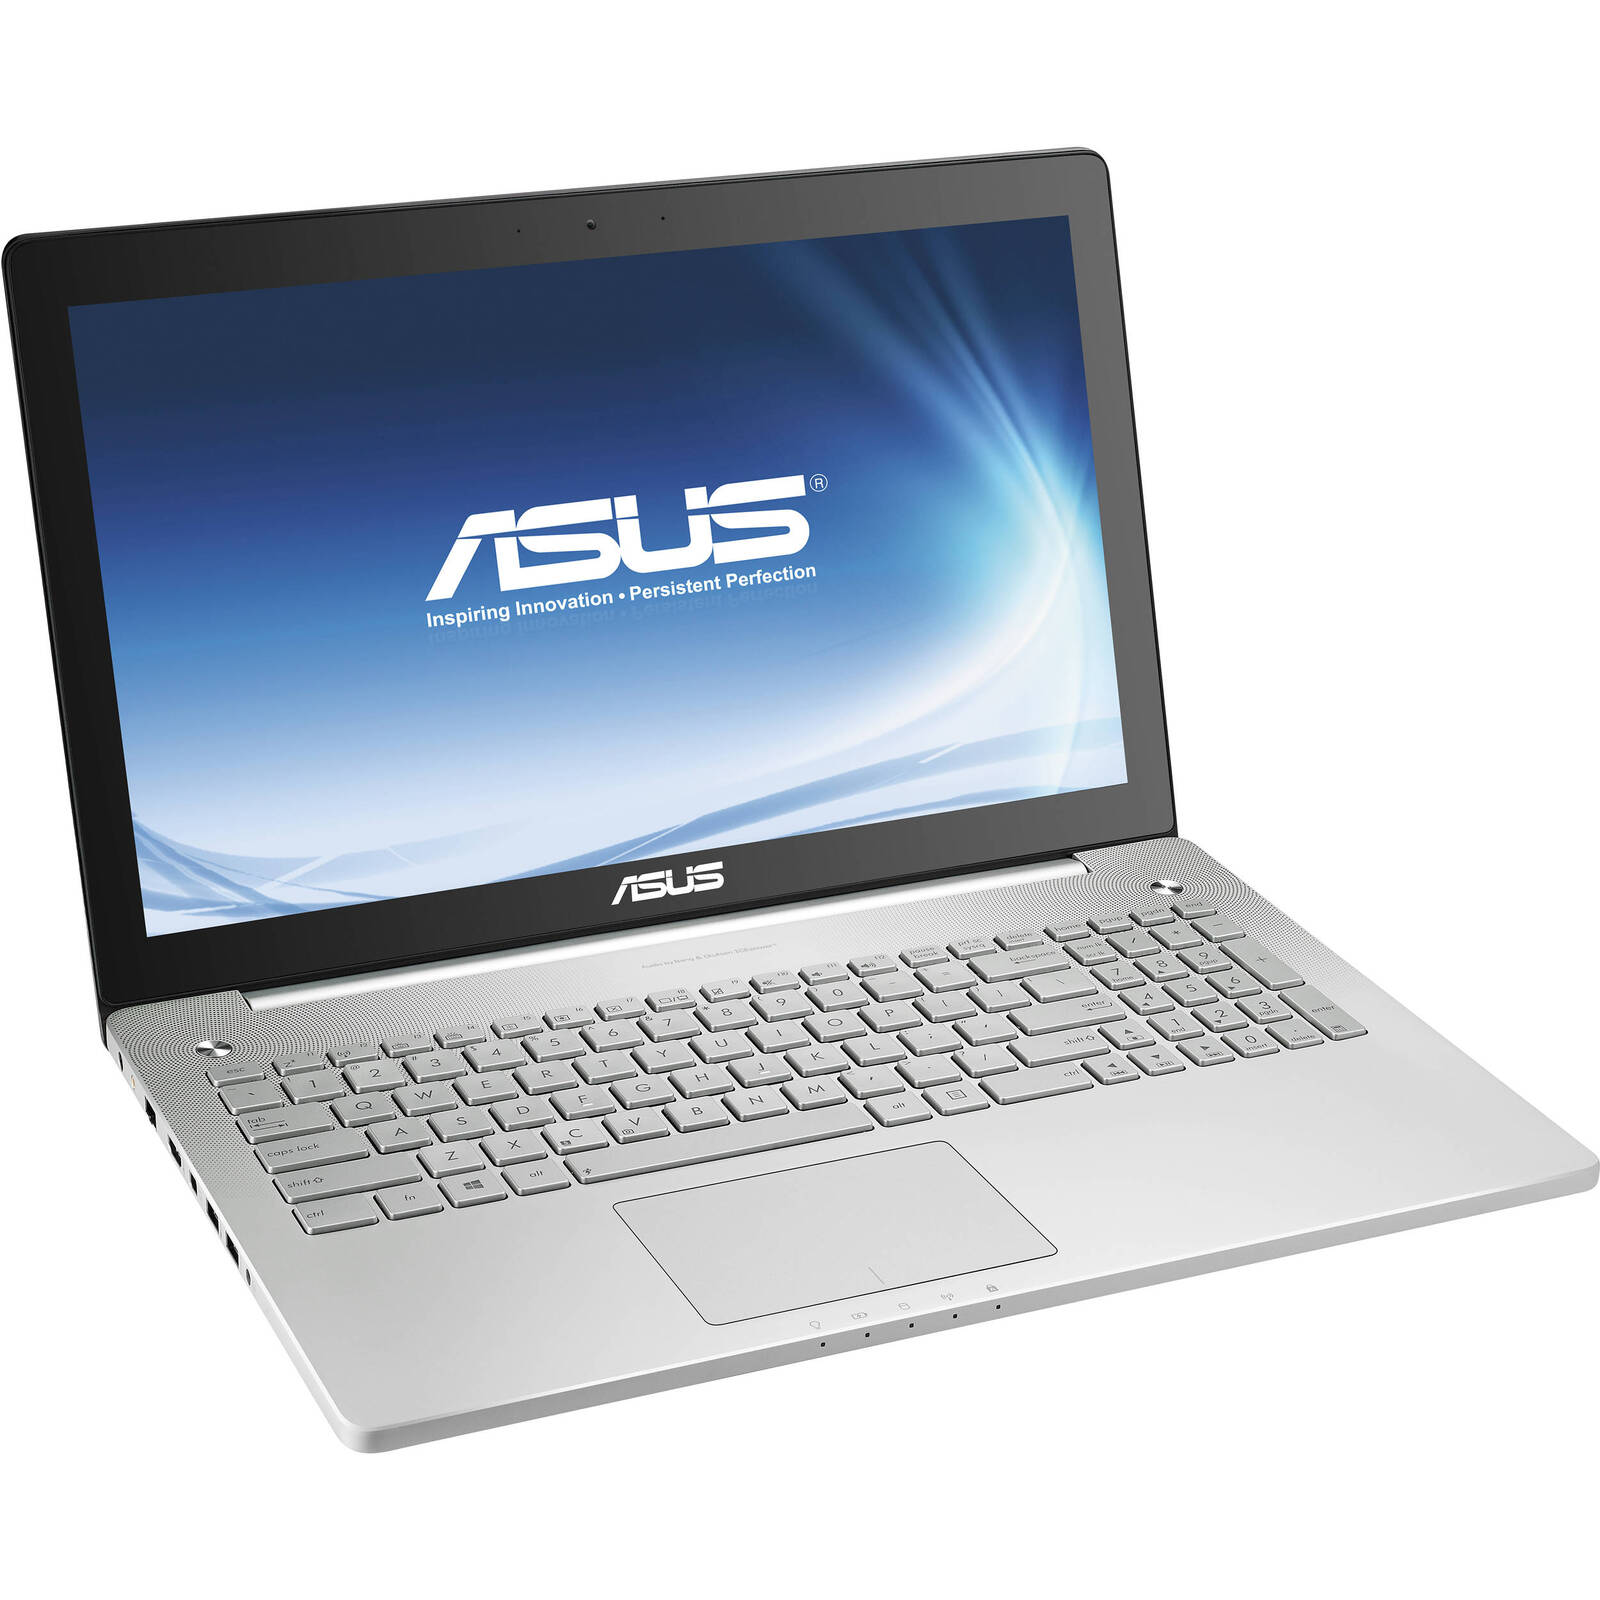 Asus N550JV Intel i7 4700MQ 2.40GHz 8GB RAM 1TB HDD 15.6" NO OS Full Size Image